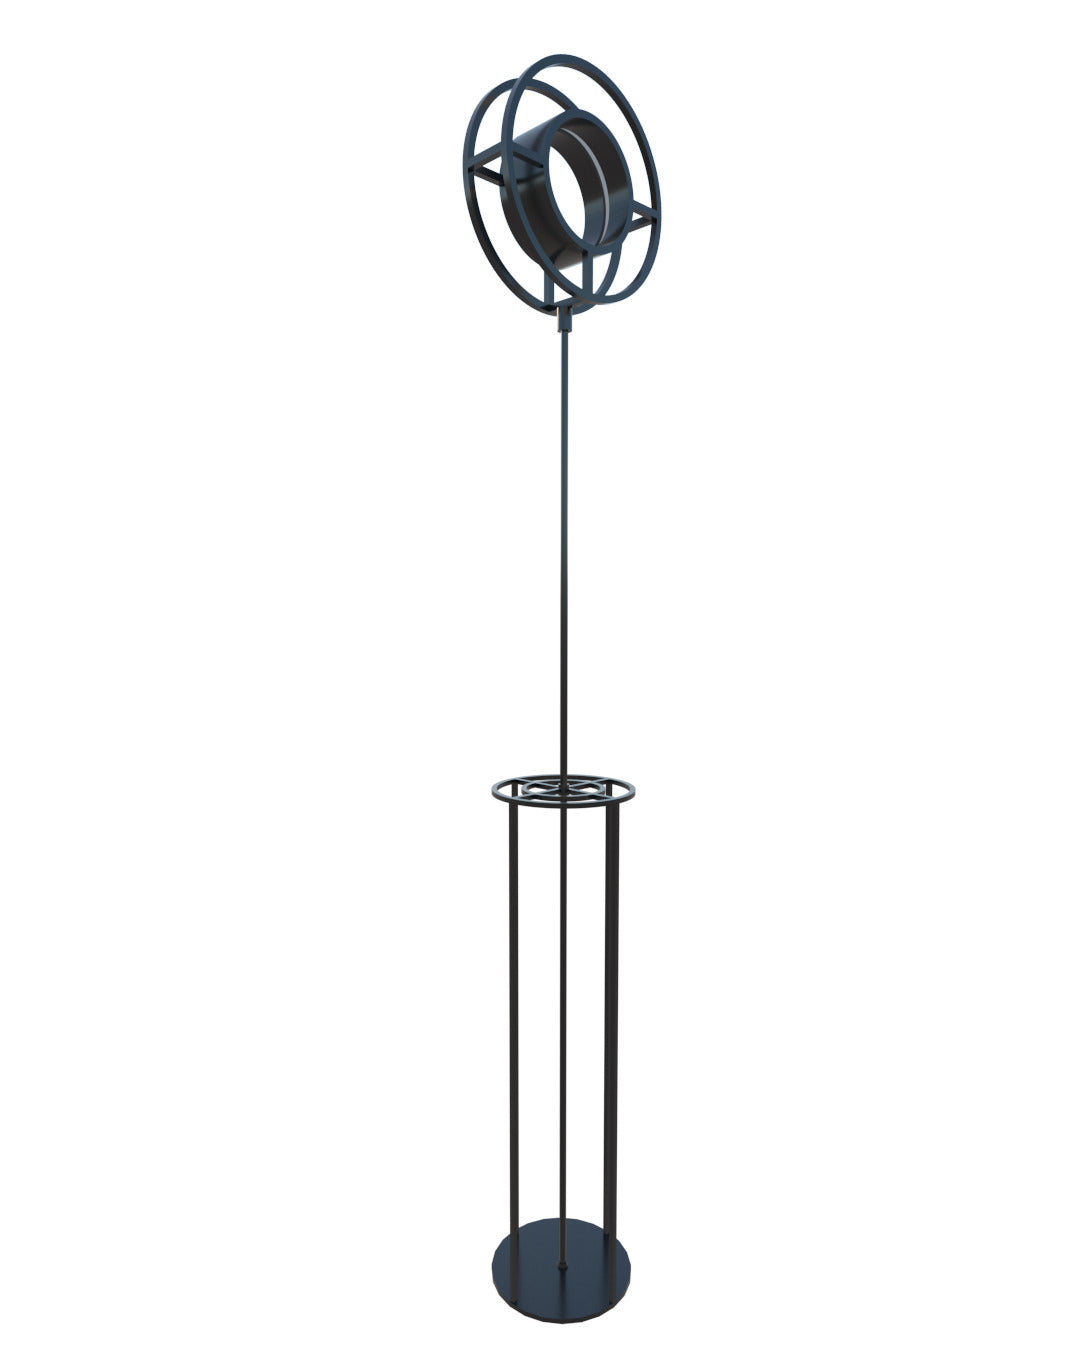 Luminaria Circular Piso A2 - Aluzina-diseño